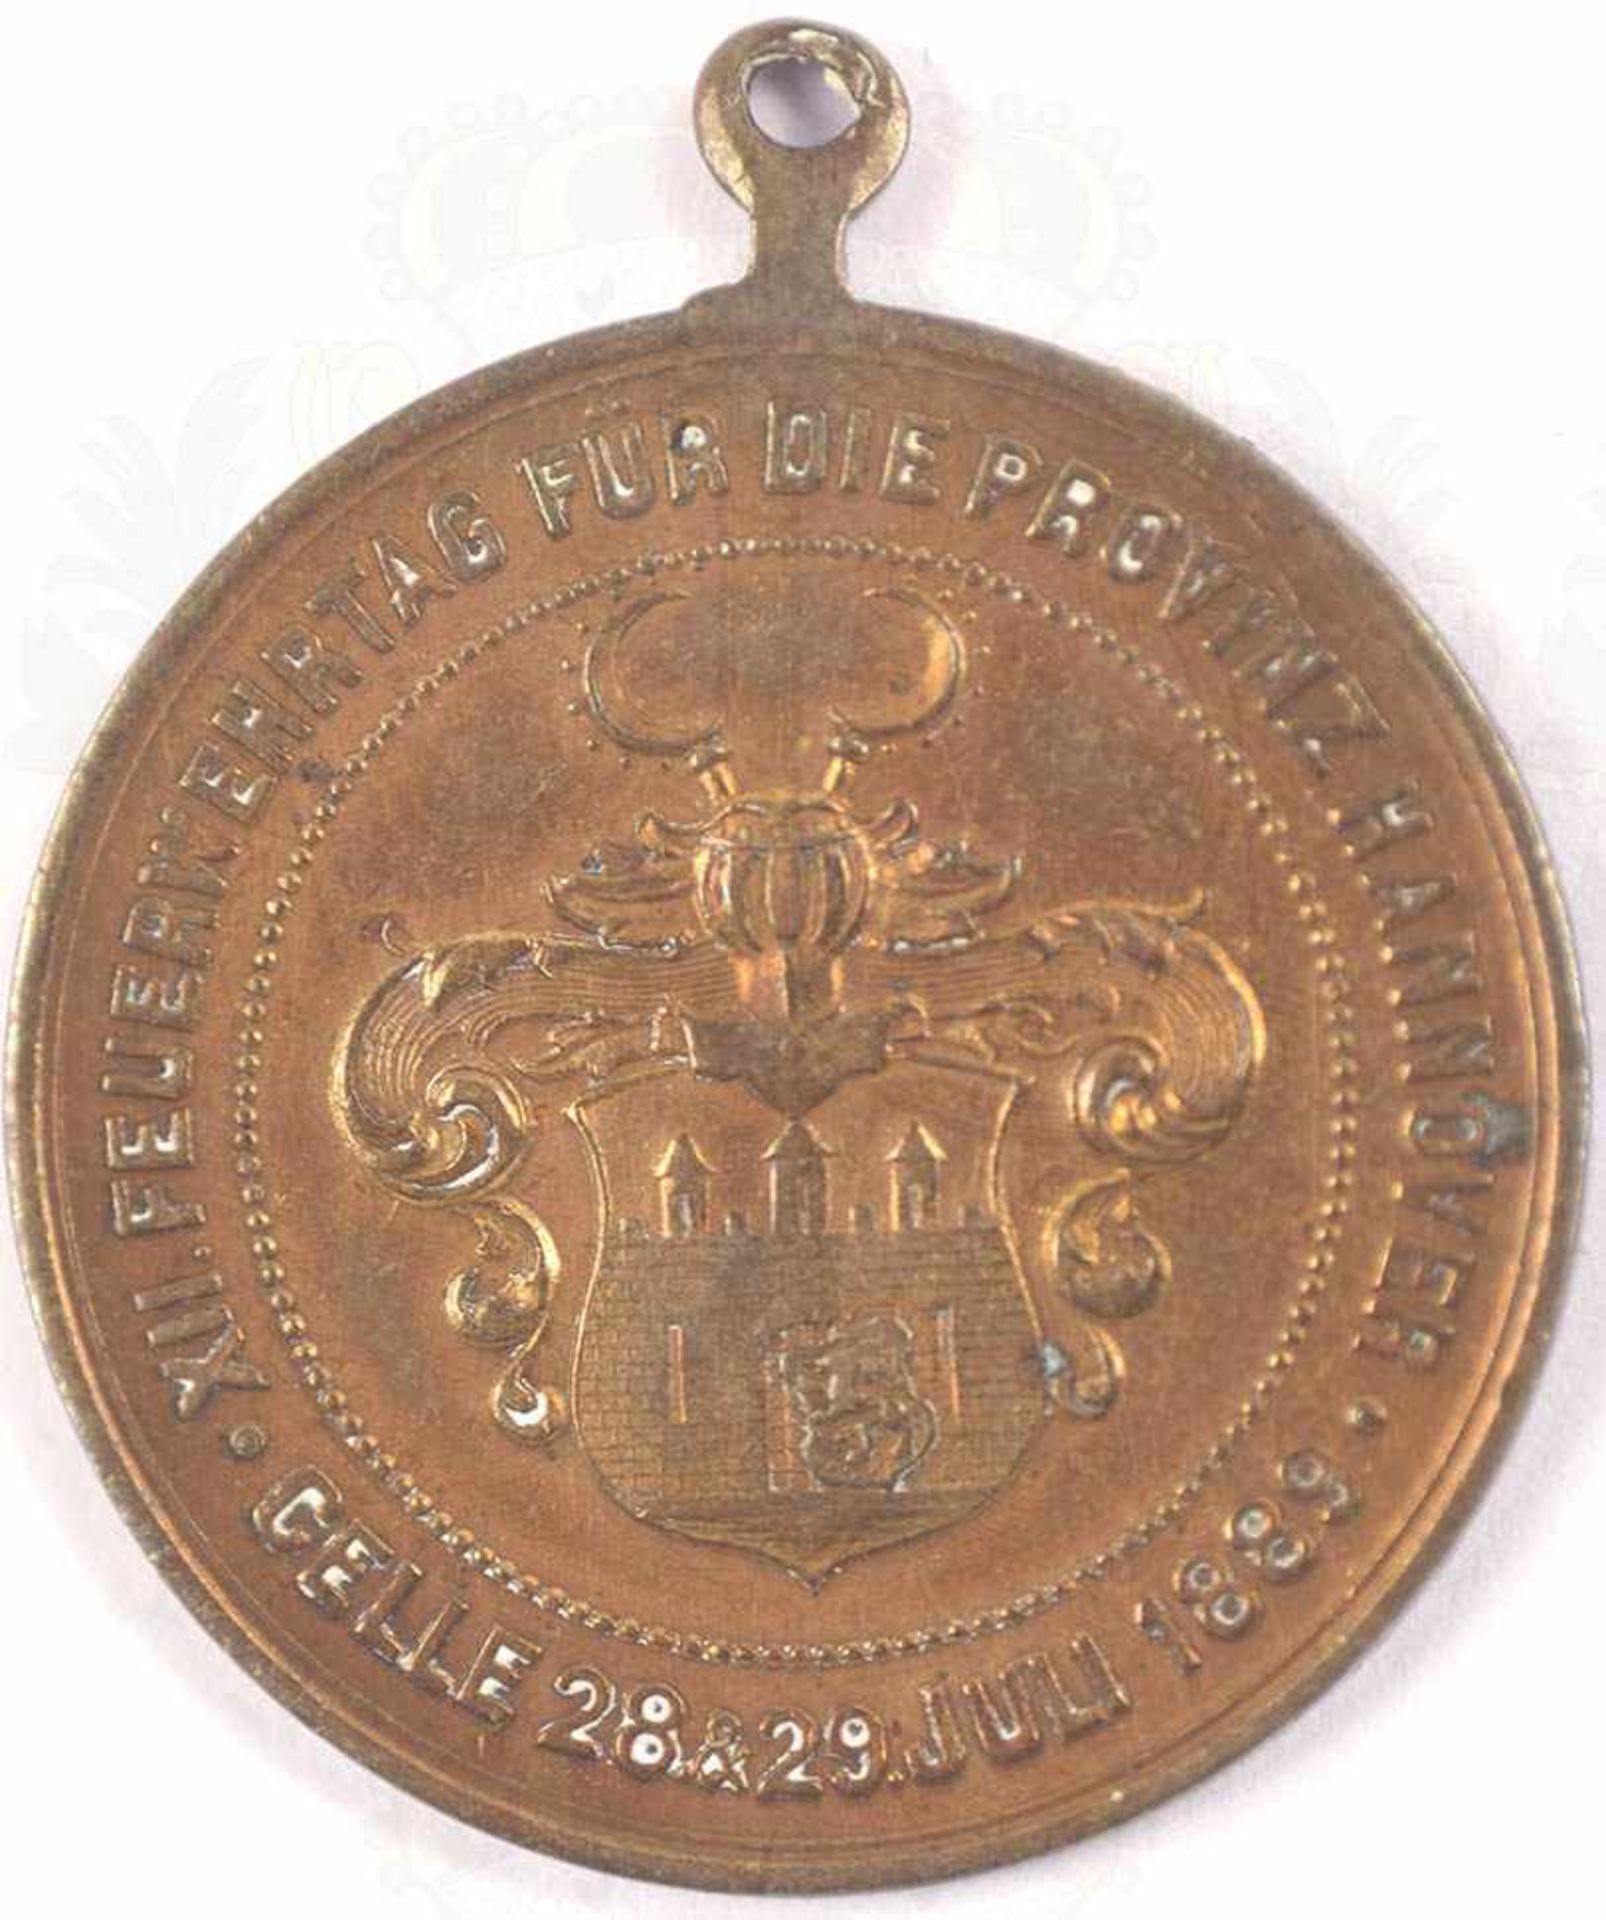 MEDAILLE XII. FEUERWEHRTAG CELLE 1889, Provinz Hannover, Bronze, Ring u. Band fehlen - Bild 2 aus 2